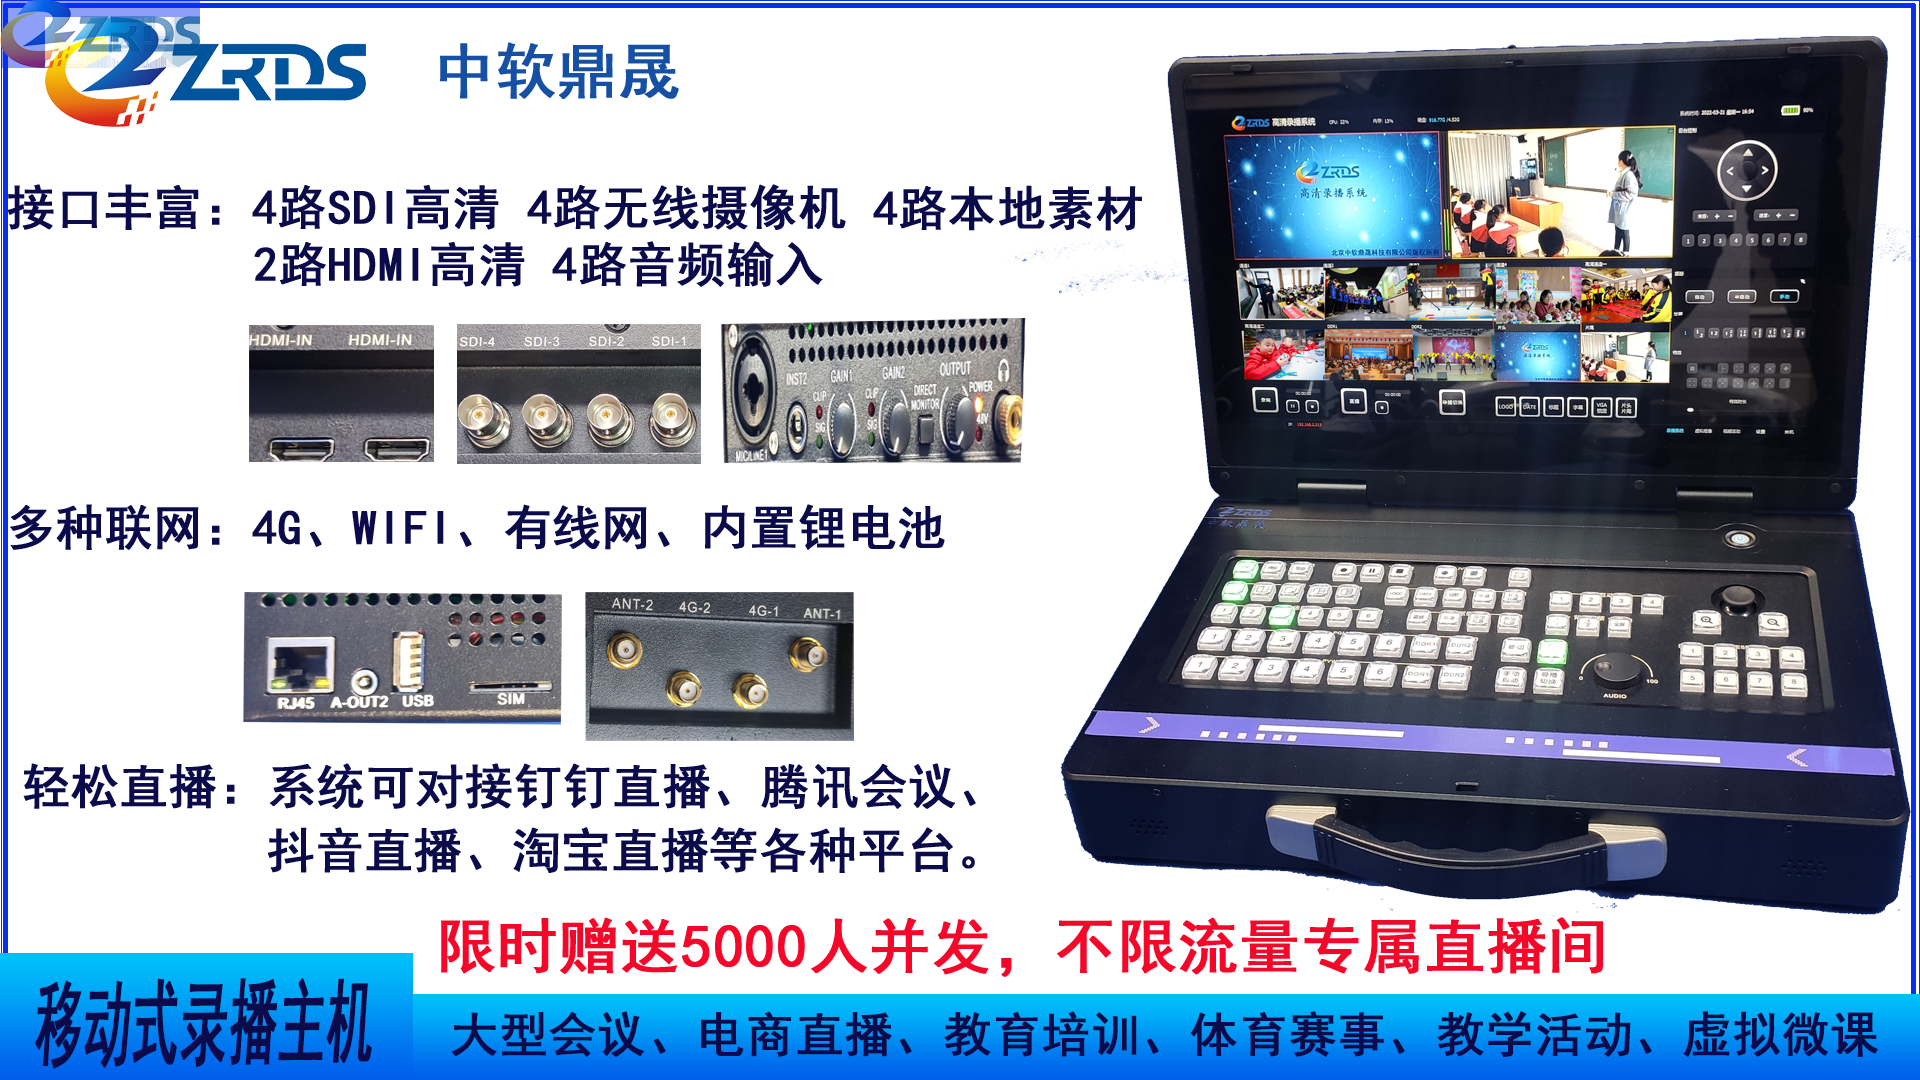 北京中软鼎晟科技有限公司推出便携式录制主机